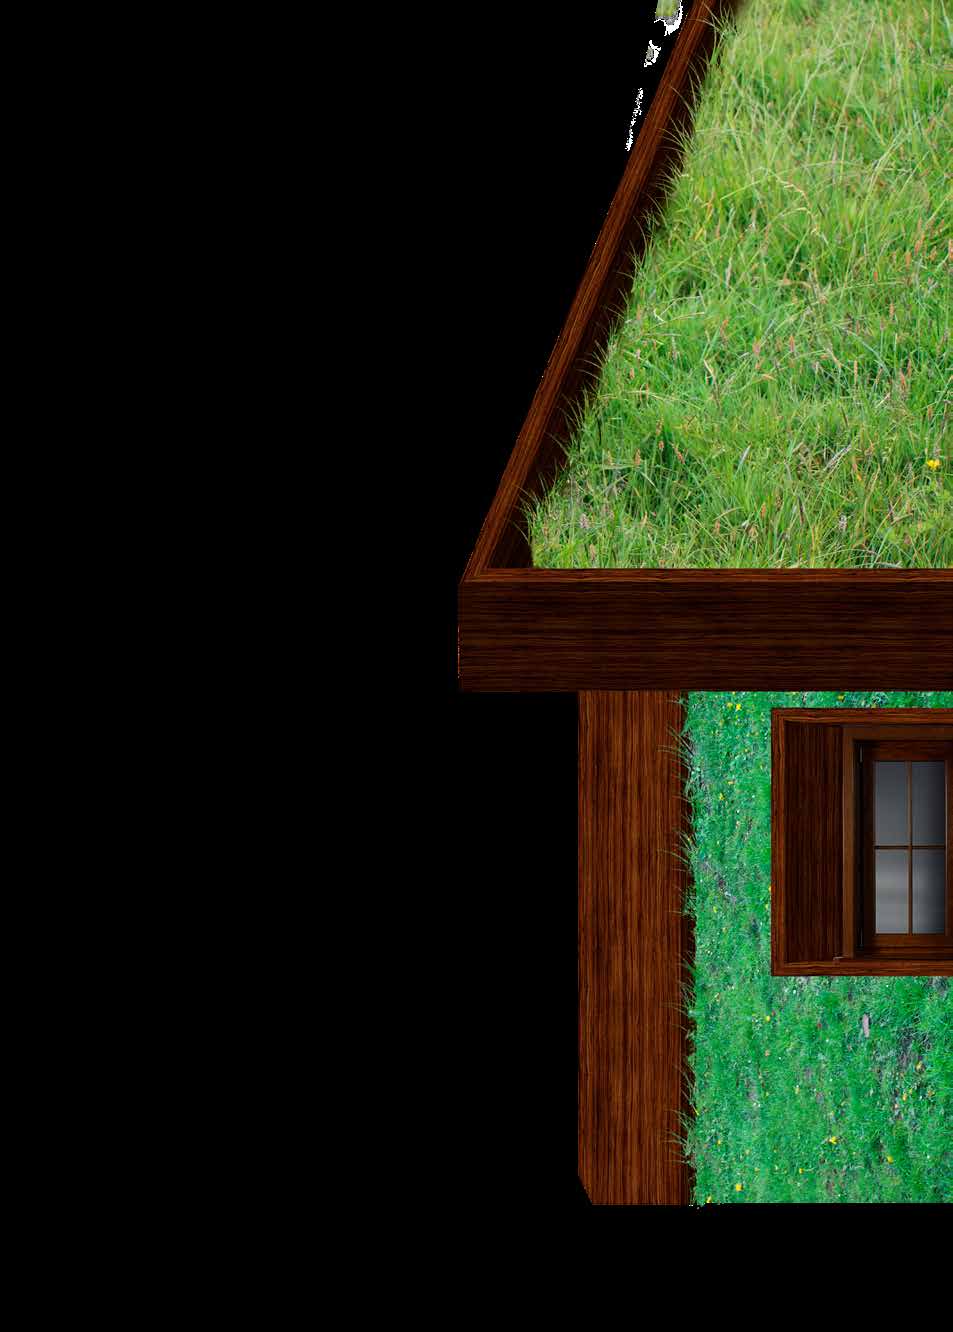 Viherkatot Eräs viherrakentamisen menetelmä on viherkatot. Se voi olla avoimen ja helppopääsyisen kattopuutarhan tai voimakkaasti viljellyn katon muodossa.